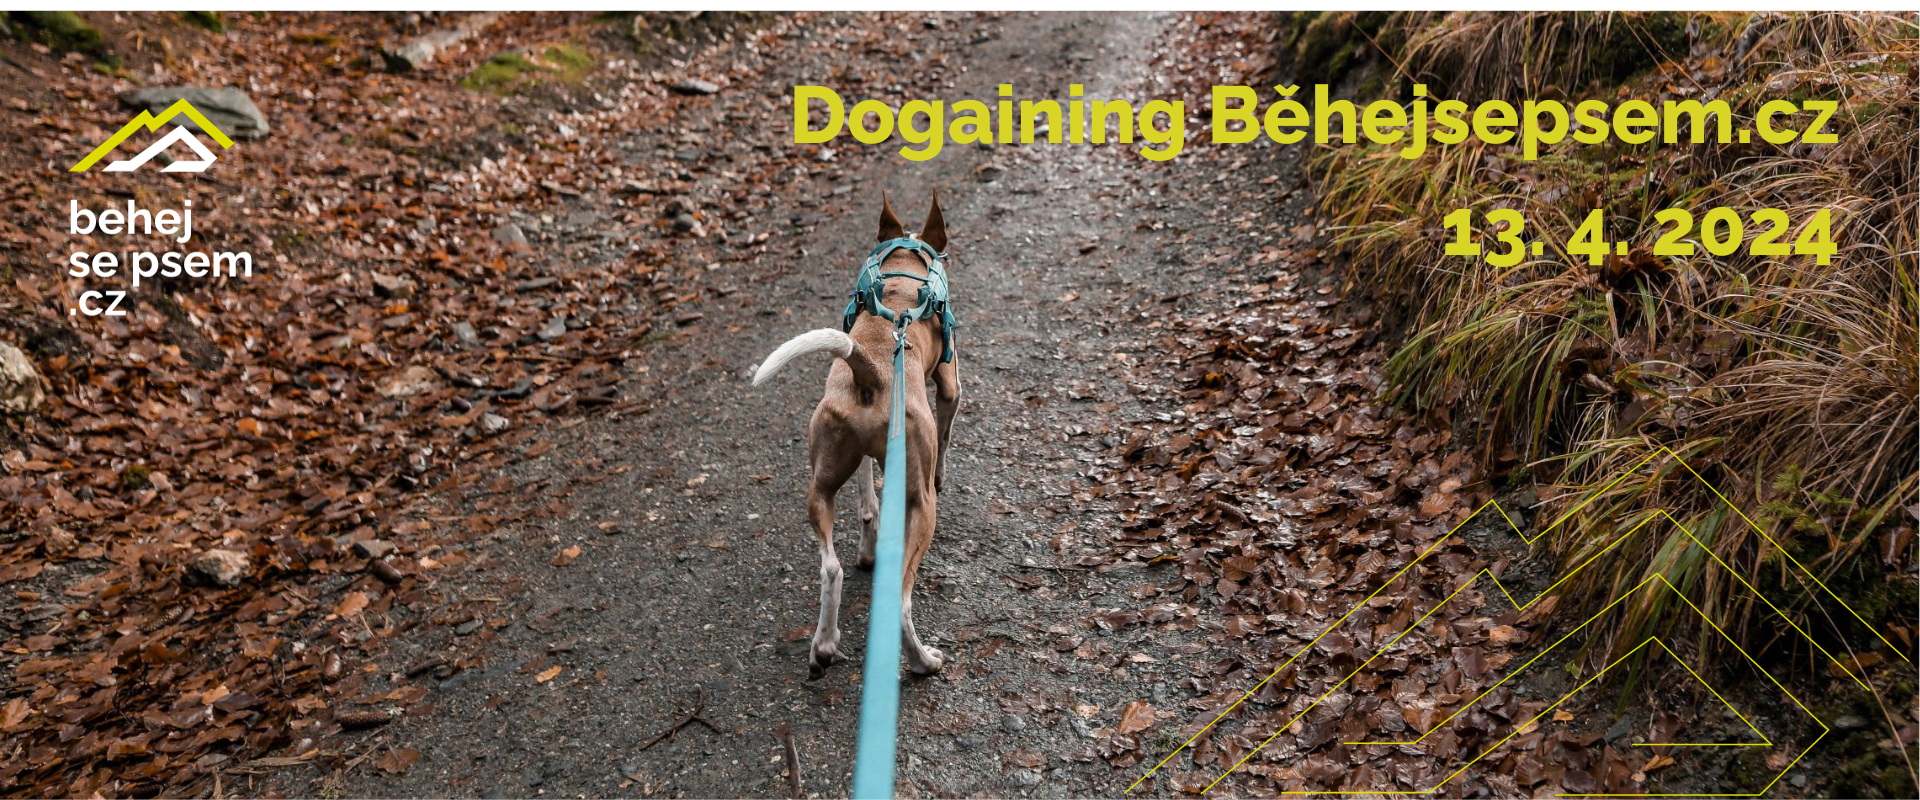 Dogaining Běhejsepsem.cz